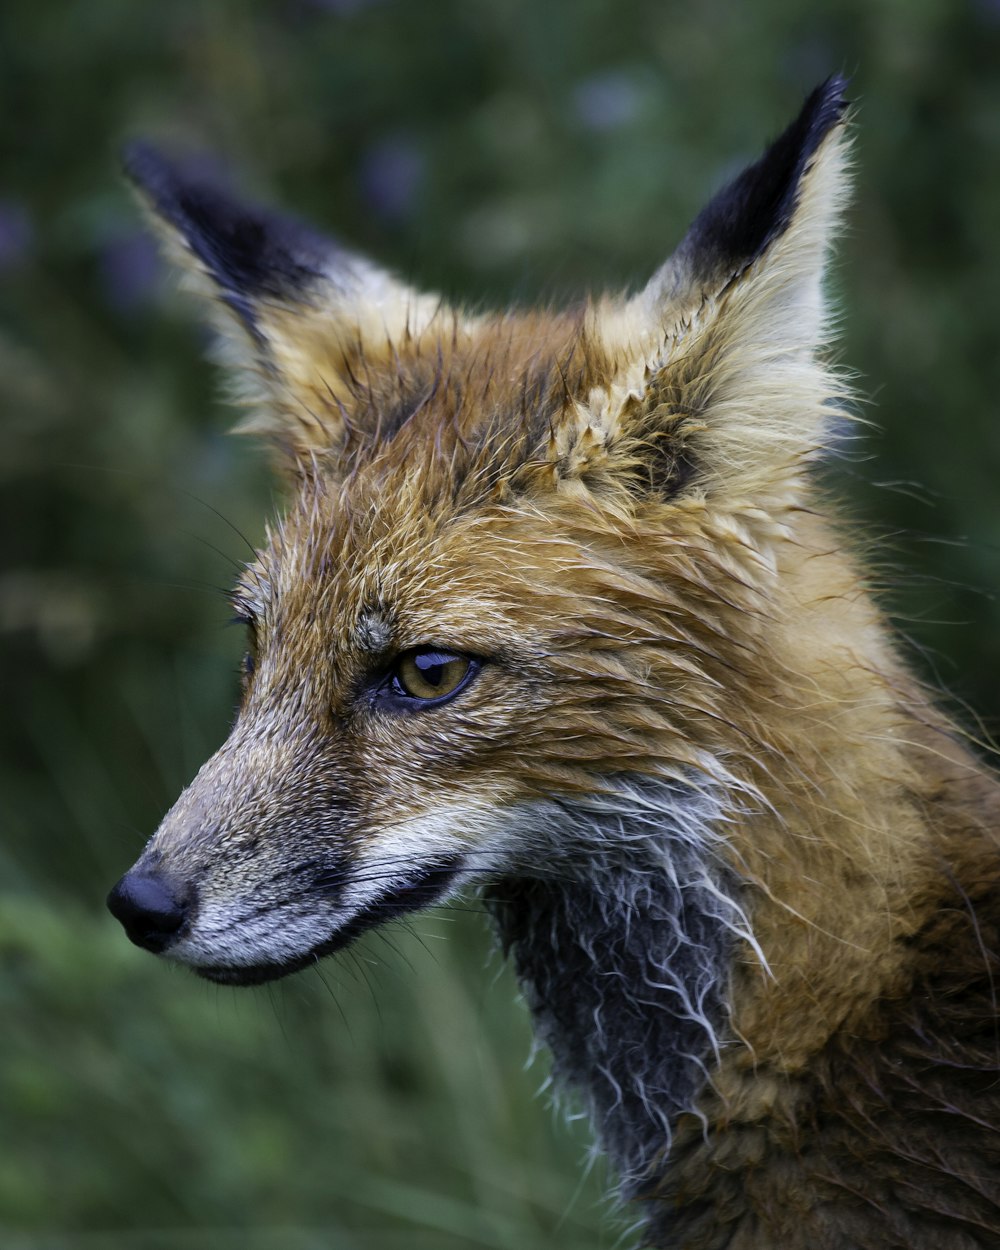 brown fox in tilt shift lens